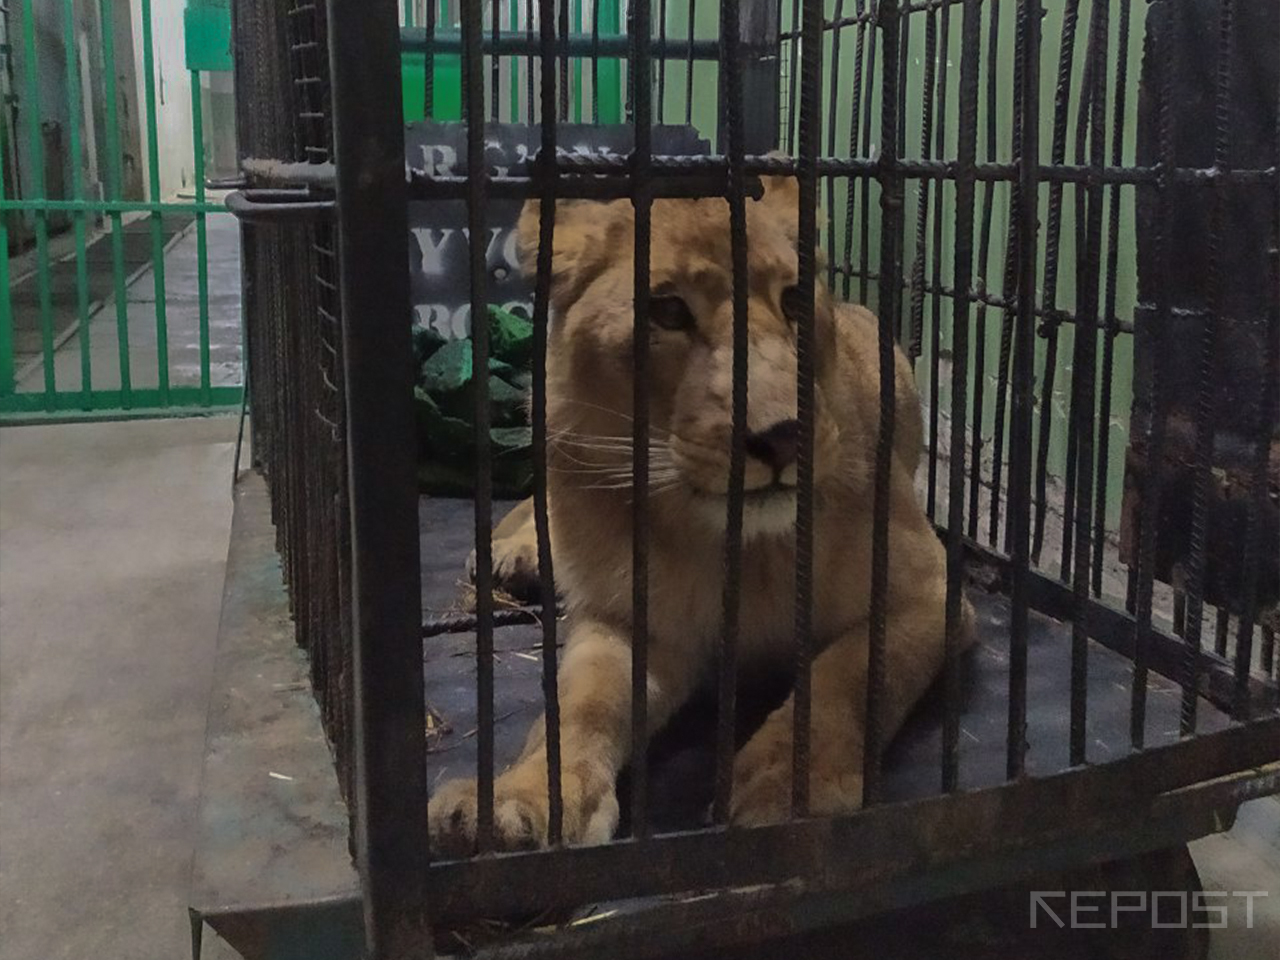 Mehr va oqibat совместно с Госкомэкологией и Ташкентским зоопарком спасли животных из Навои